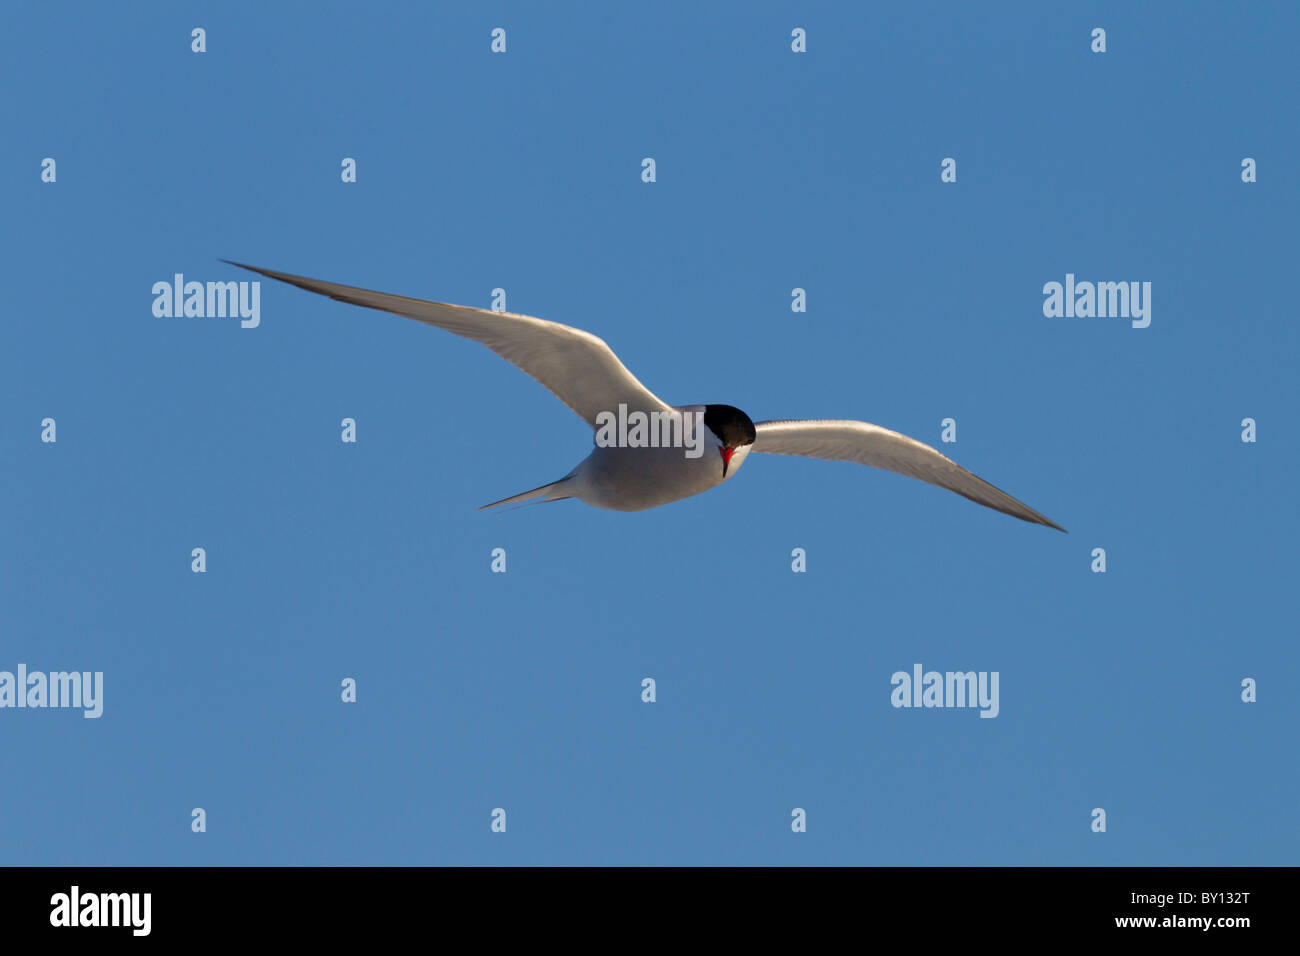 Common tern (Sterna hirundo), adult bird in flight Stock Photo